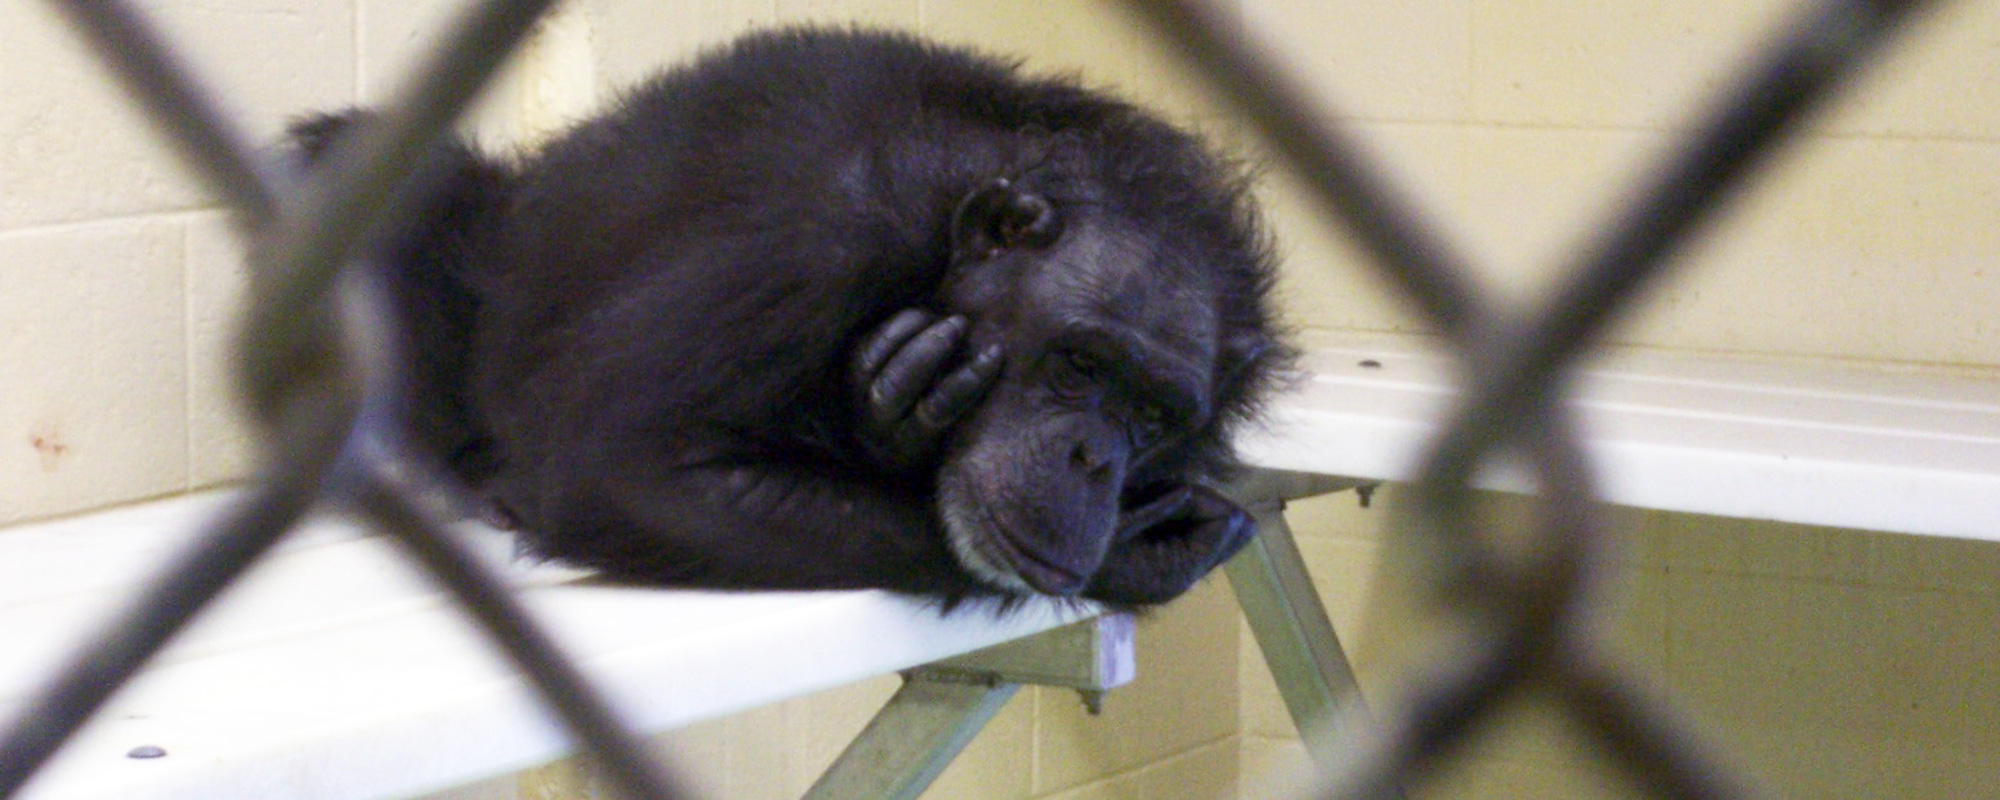 A photo of a sad chimpanzee in a testing facility.